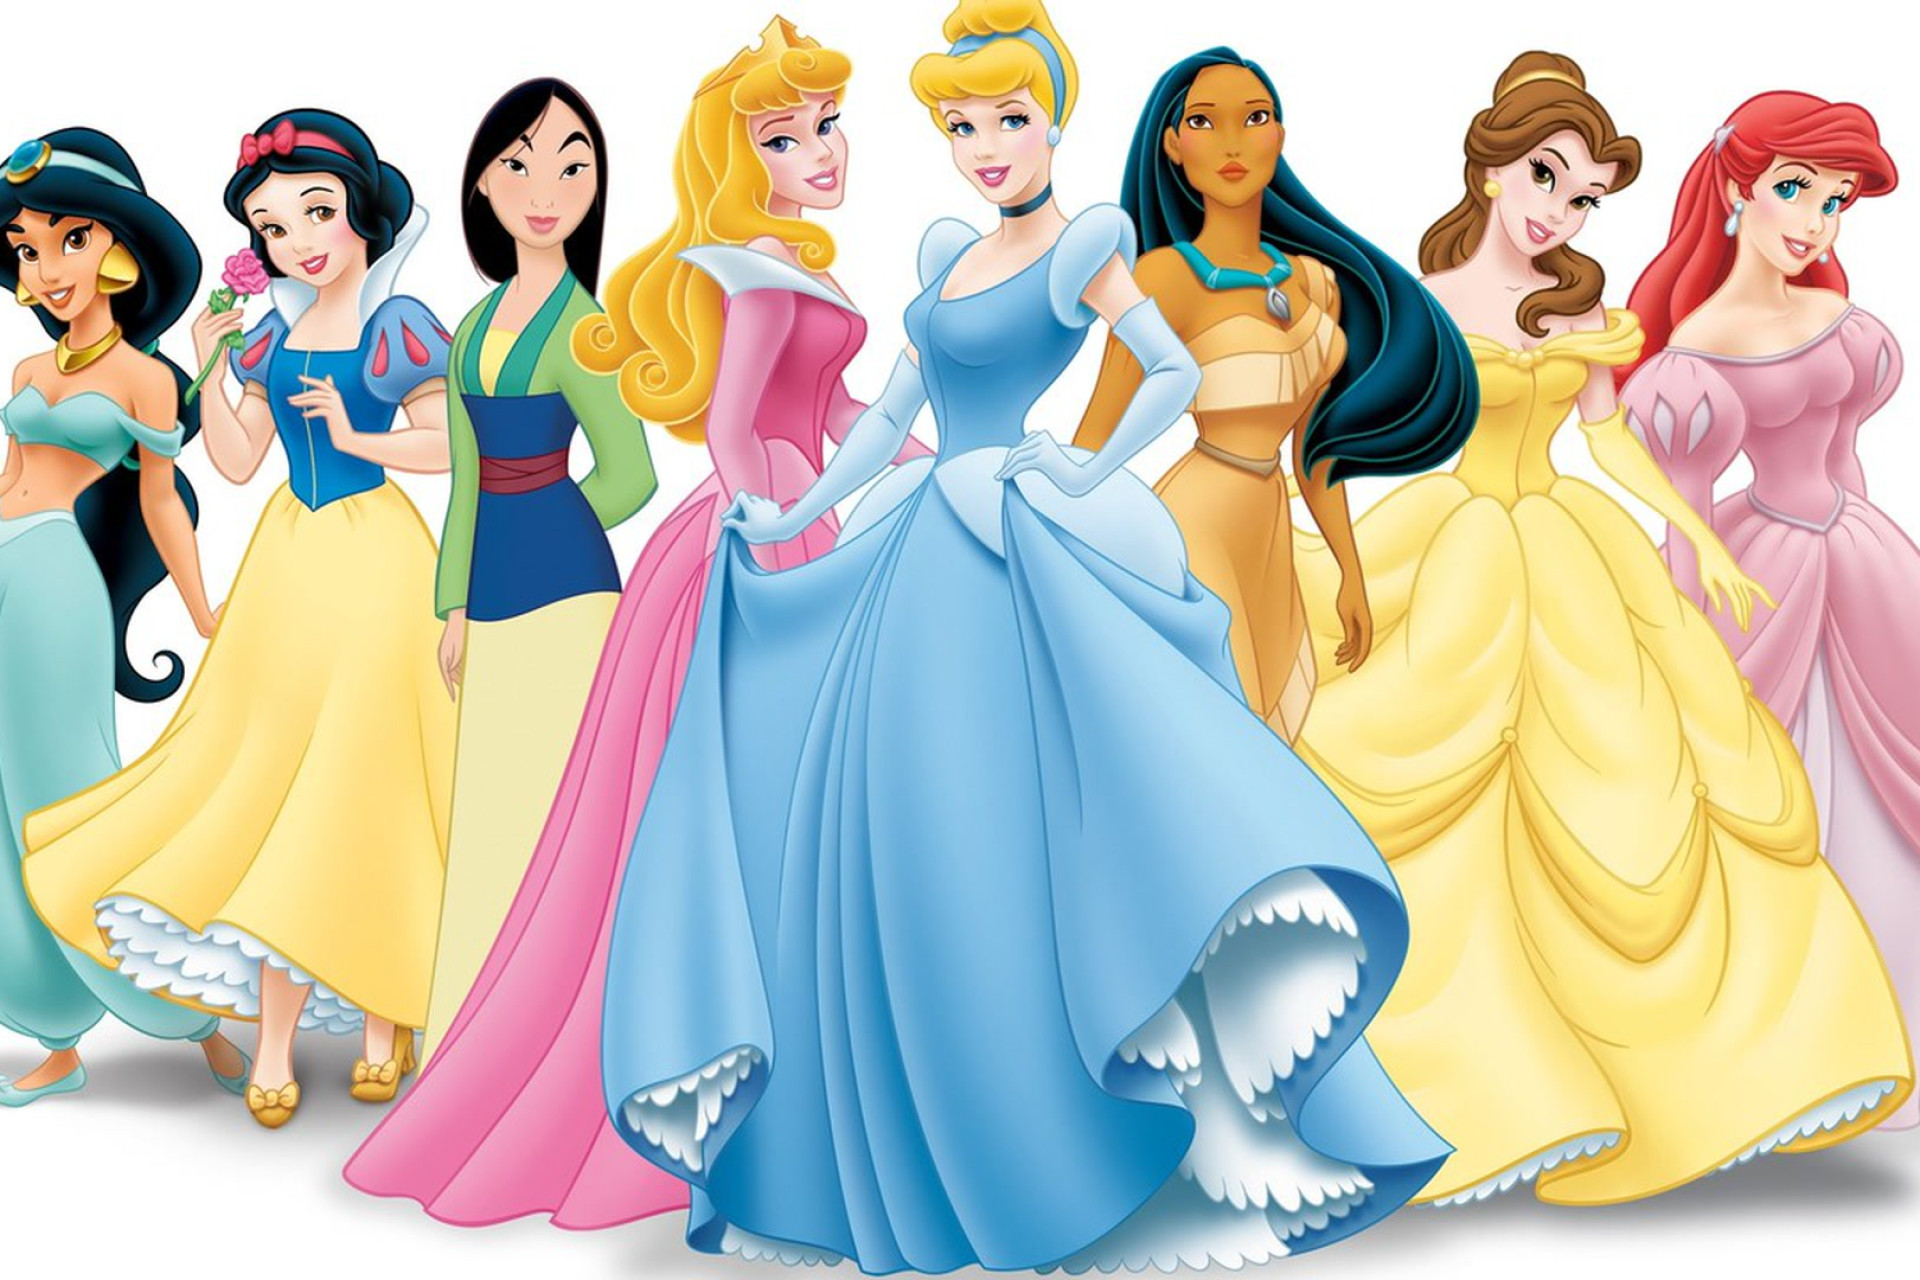 Les princesses Disney avec leurs belles tenues colorées.